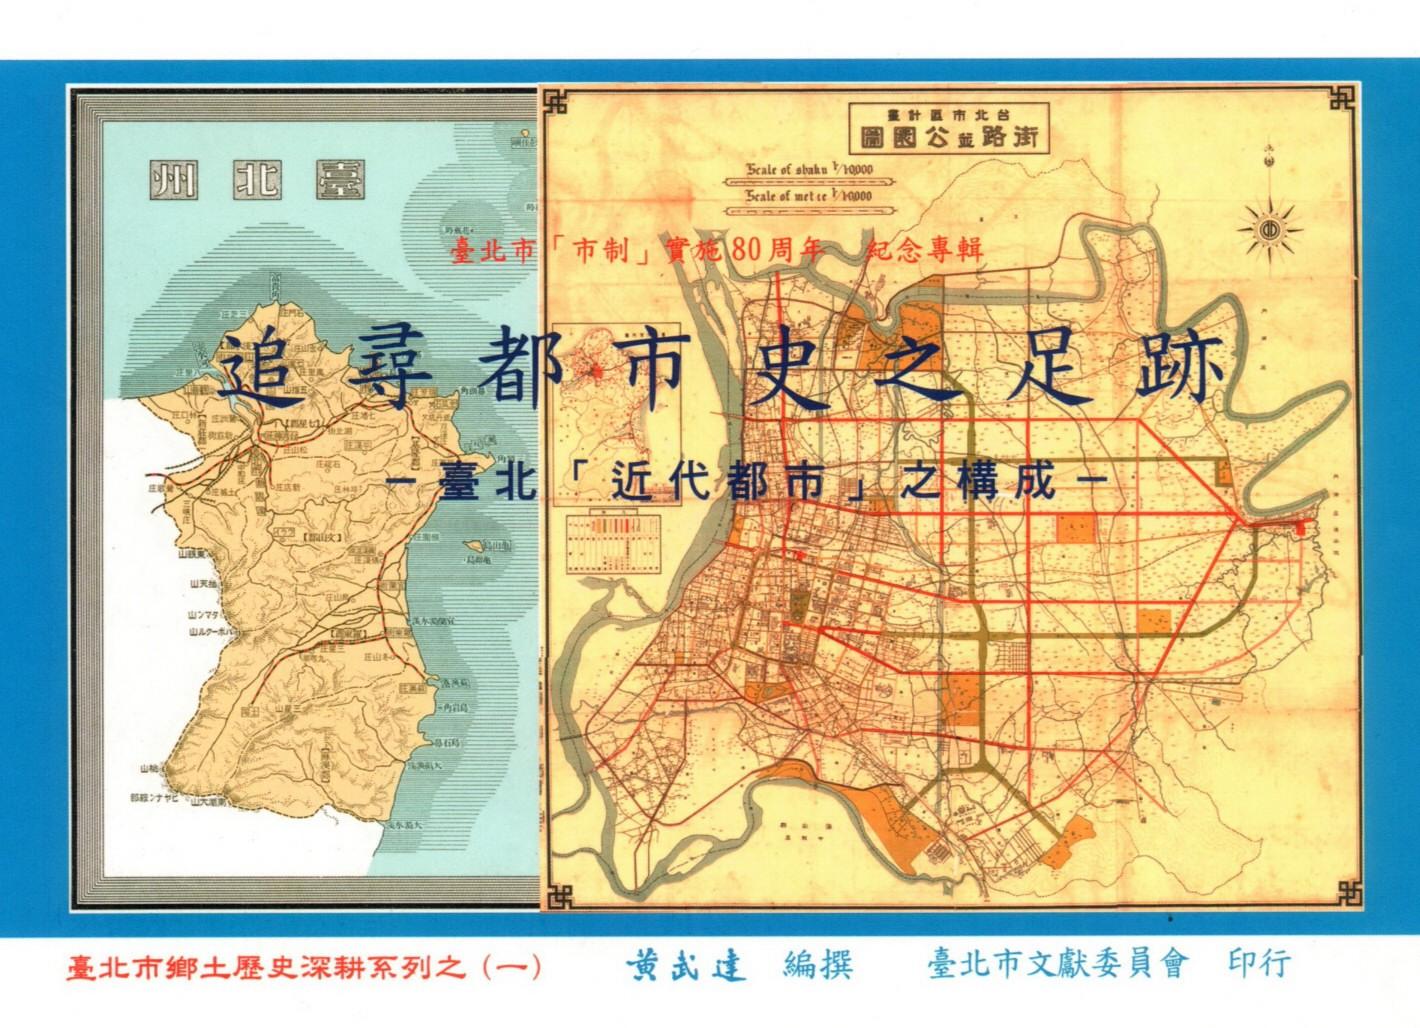 追尋都市史之足跡--臺北「近代都市」之構成